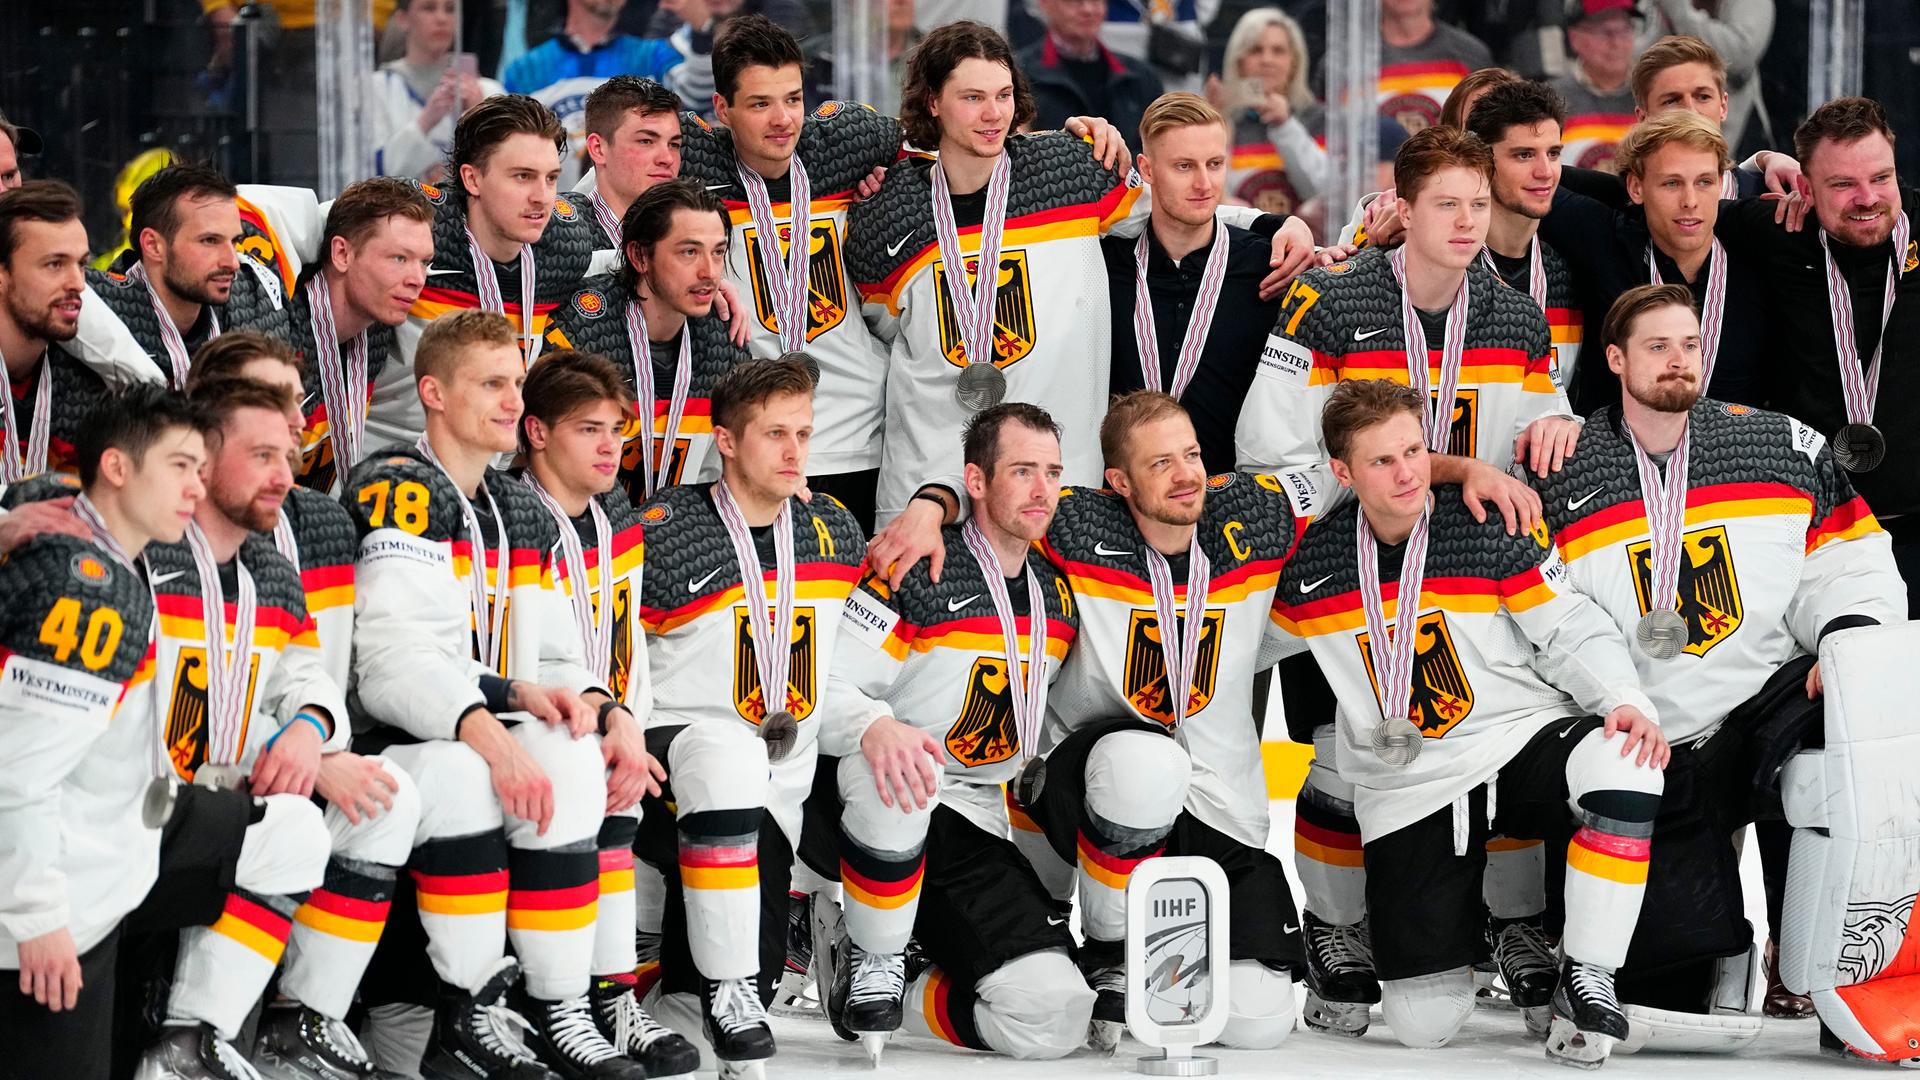 Das Foto zeigt viele deutsche Eishockey-Spieler eng nebeneinander.